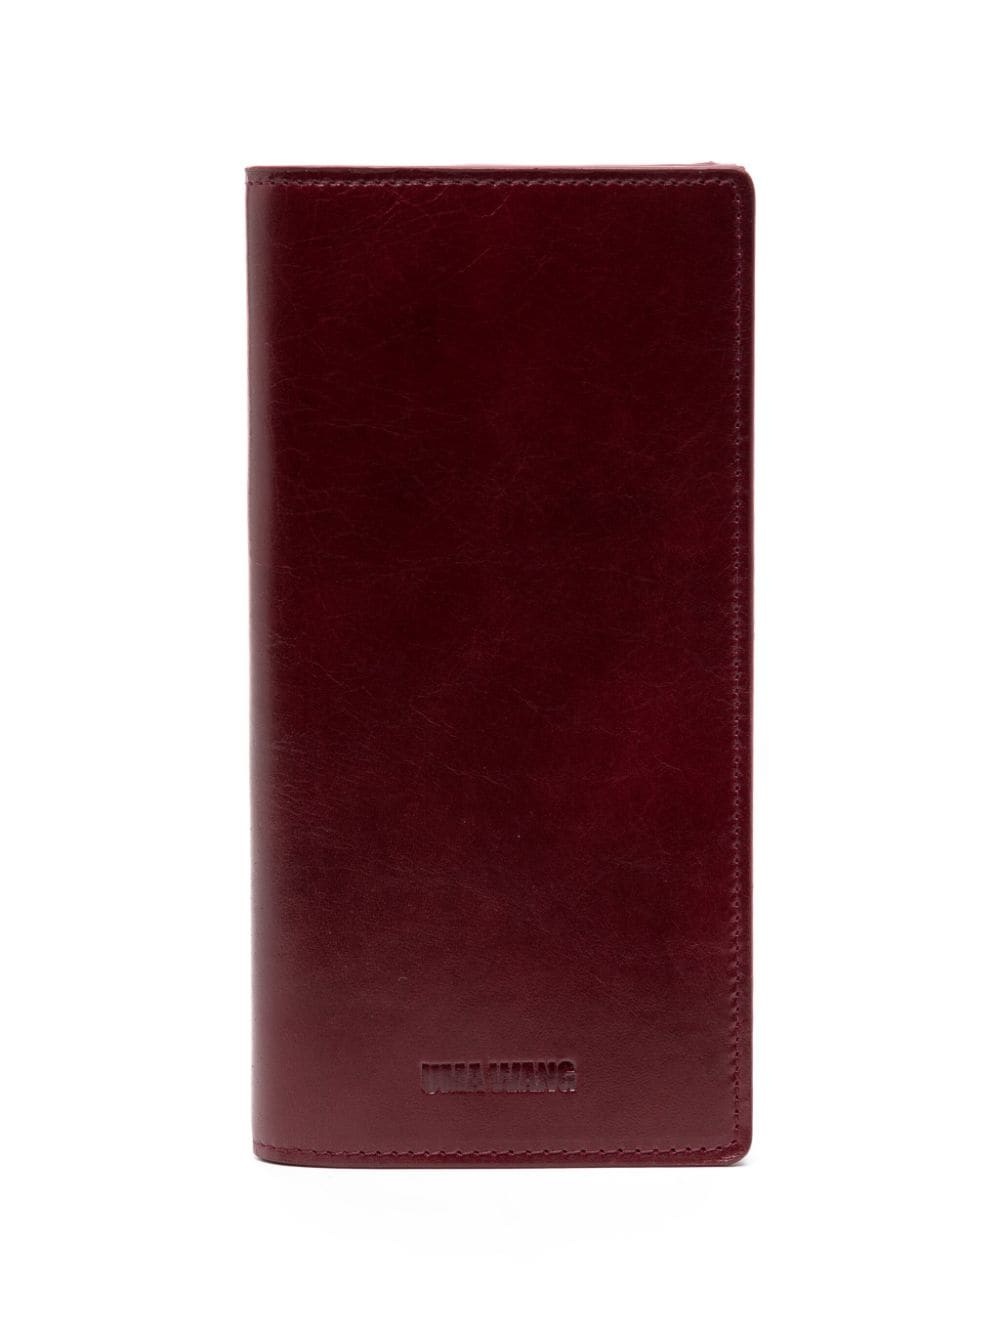 logo-debossed leather wallet - 1